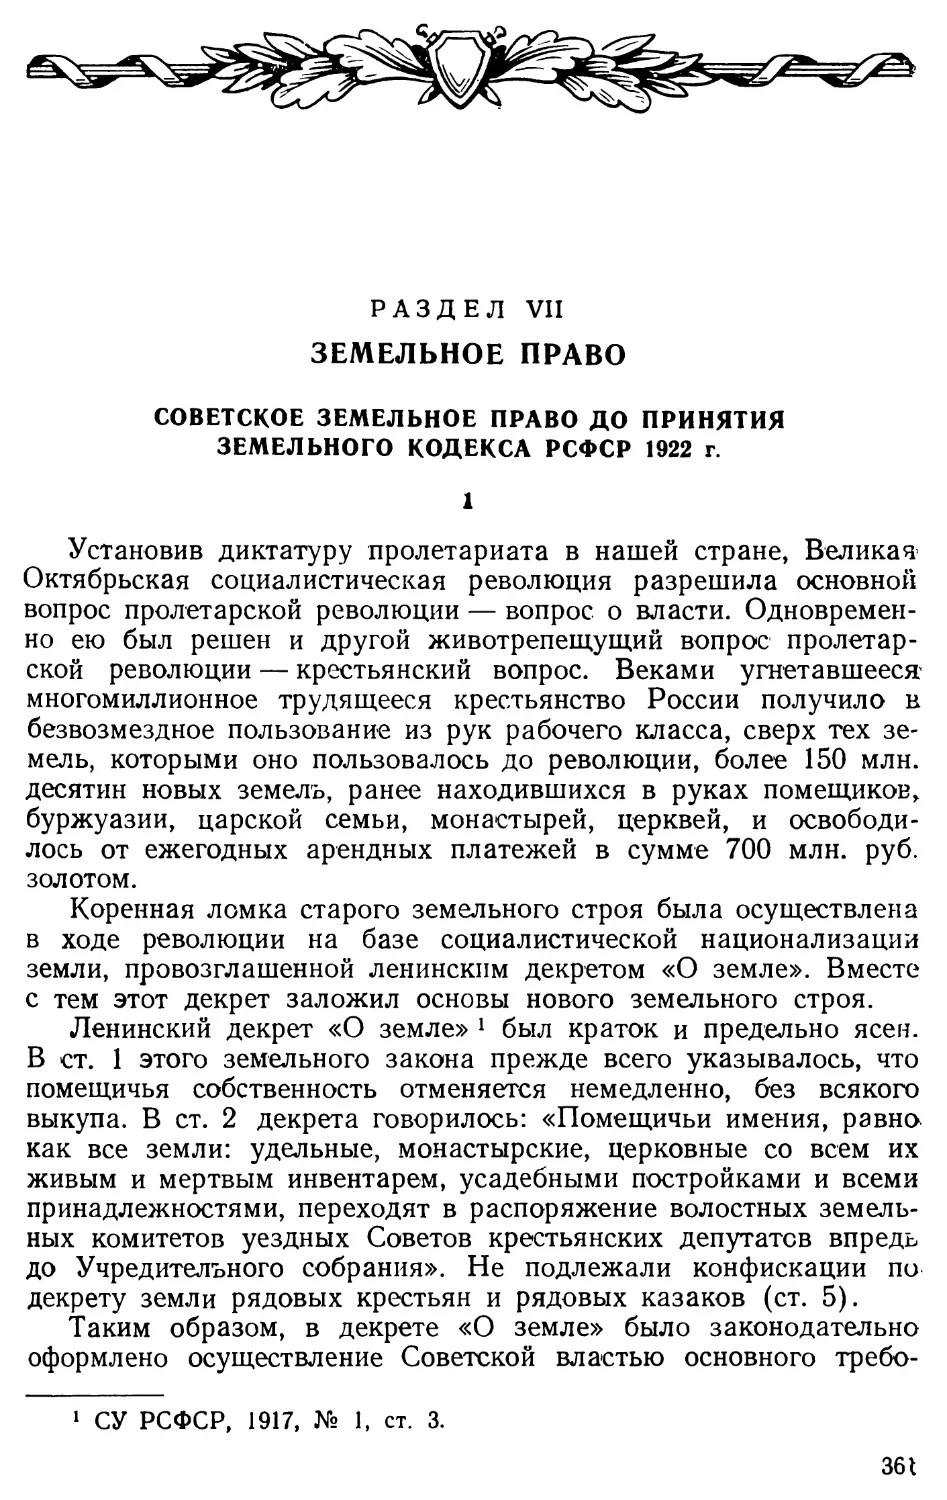 Советское земельное право до принятия Земельного Кодекса РСФСР 1922 г.